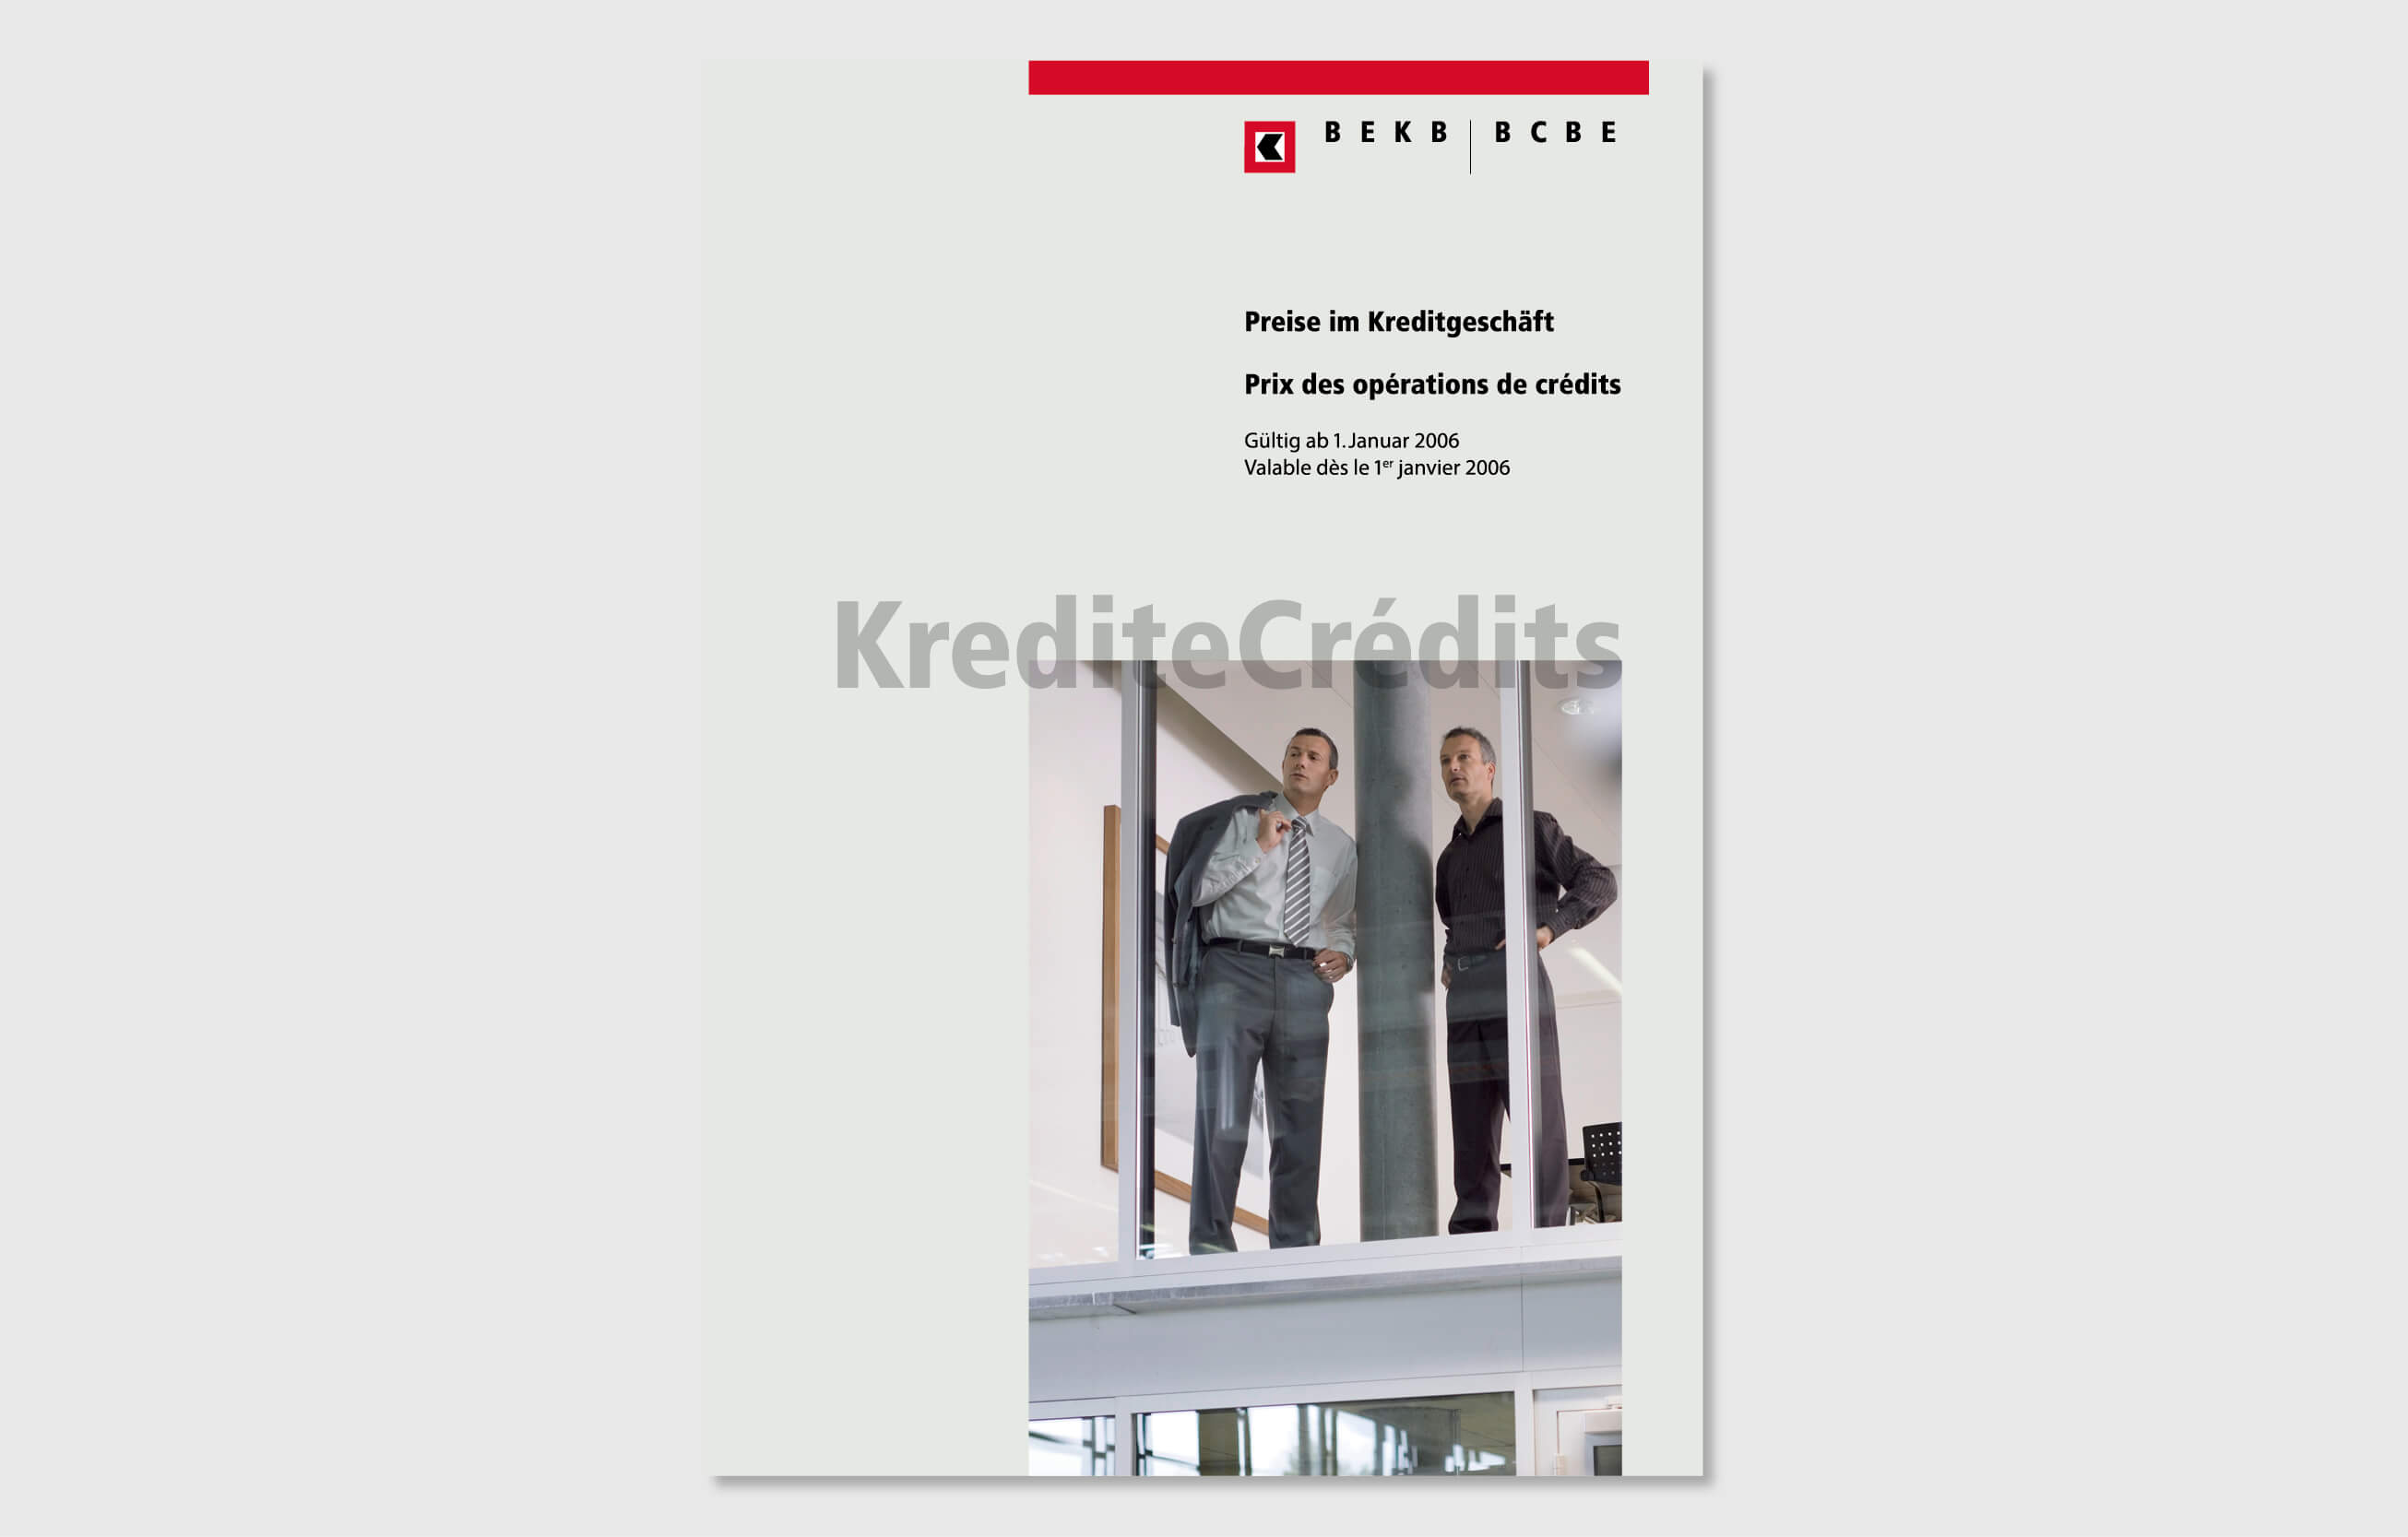 bekb design by consign | Agentur für Branding und Kommunikation